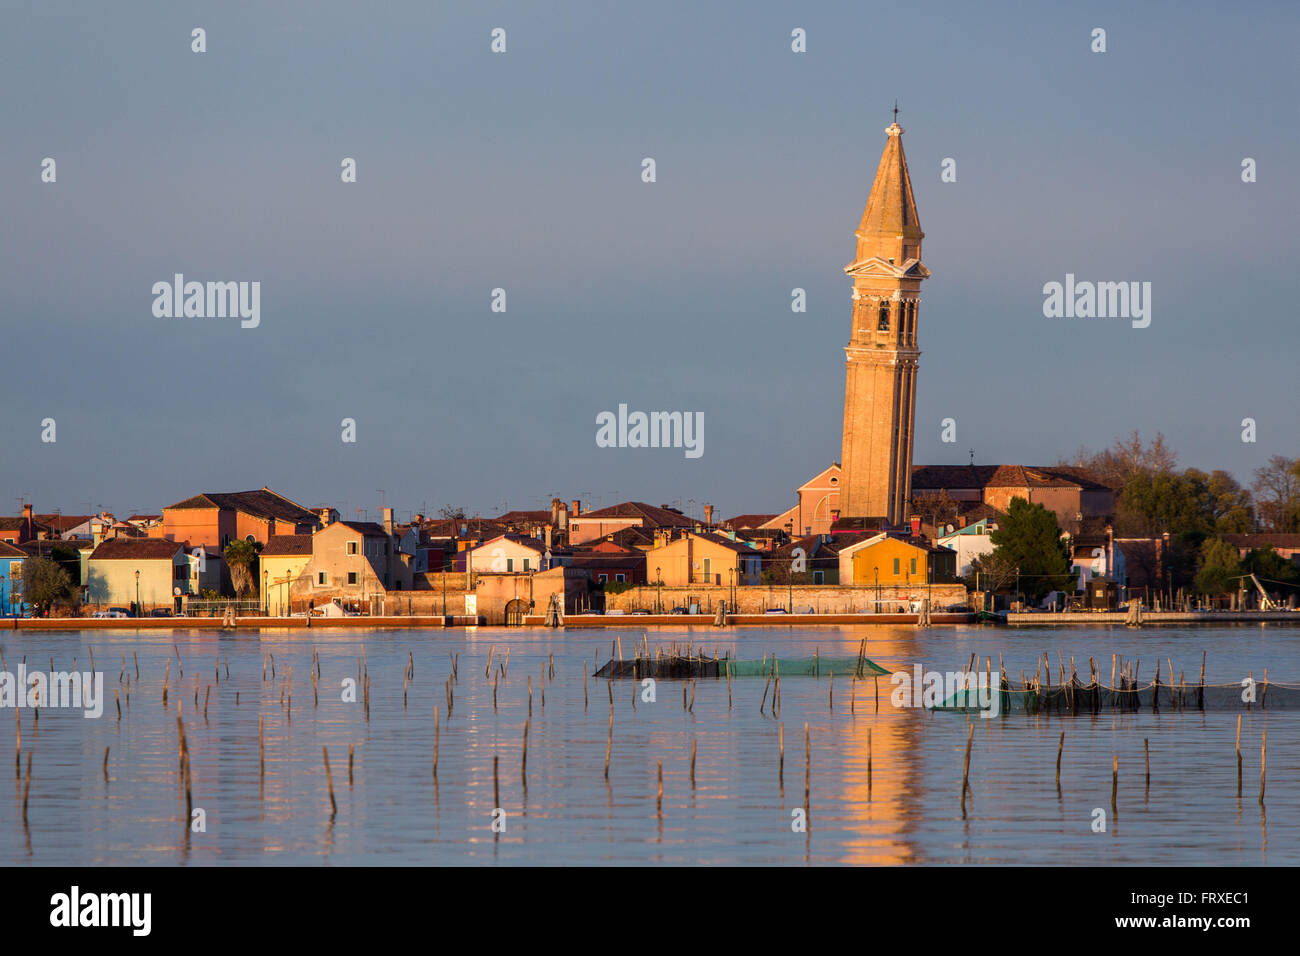 Venezianische Lagune mit der Insel Burano und schiefen Turm, Fischerdorf mit bunten Häuserfassaden, Veneto, Italien Stockfoto